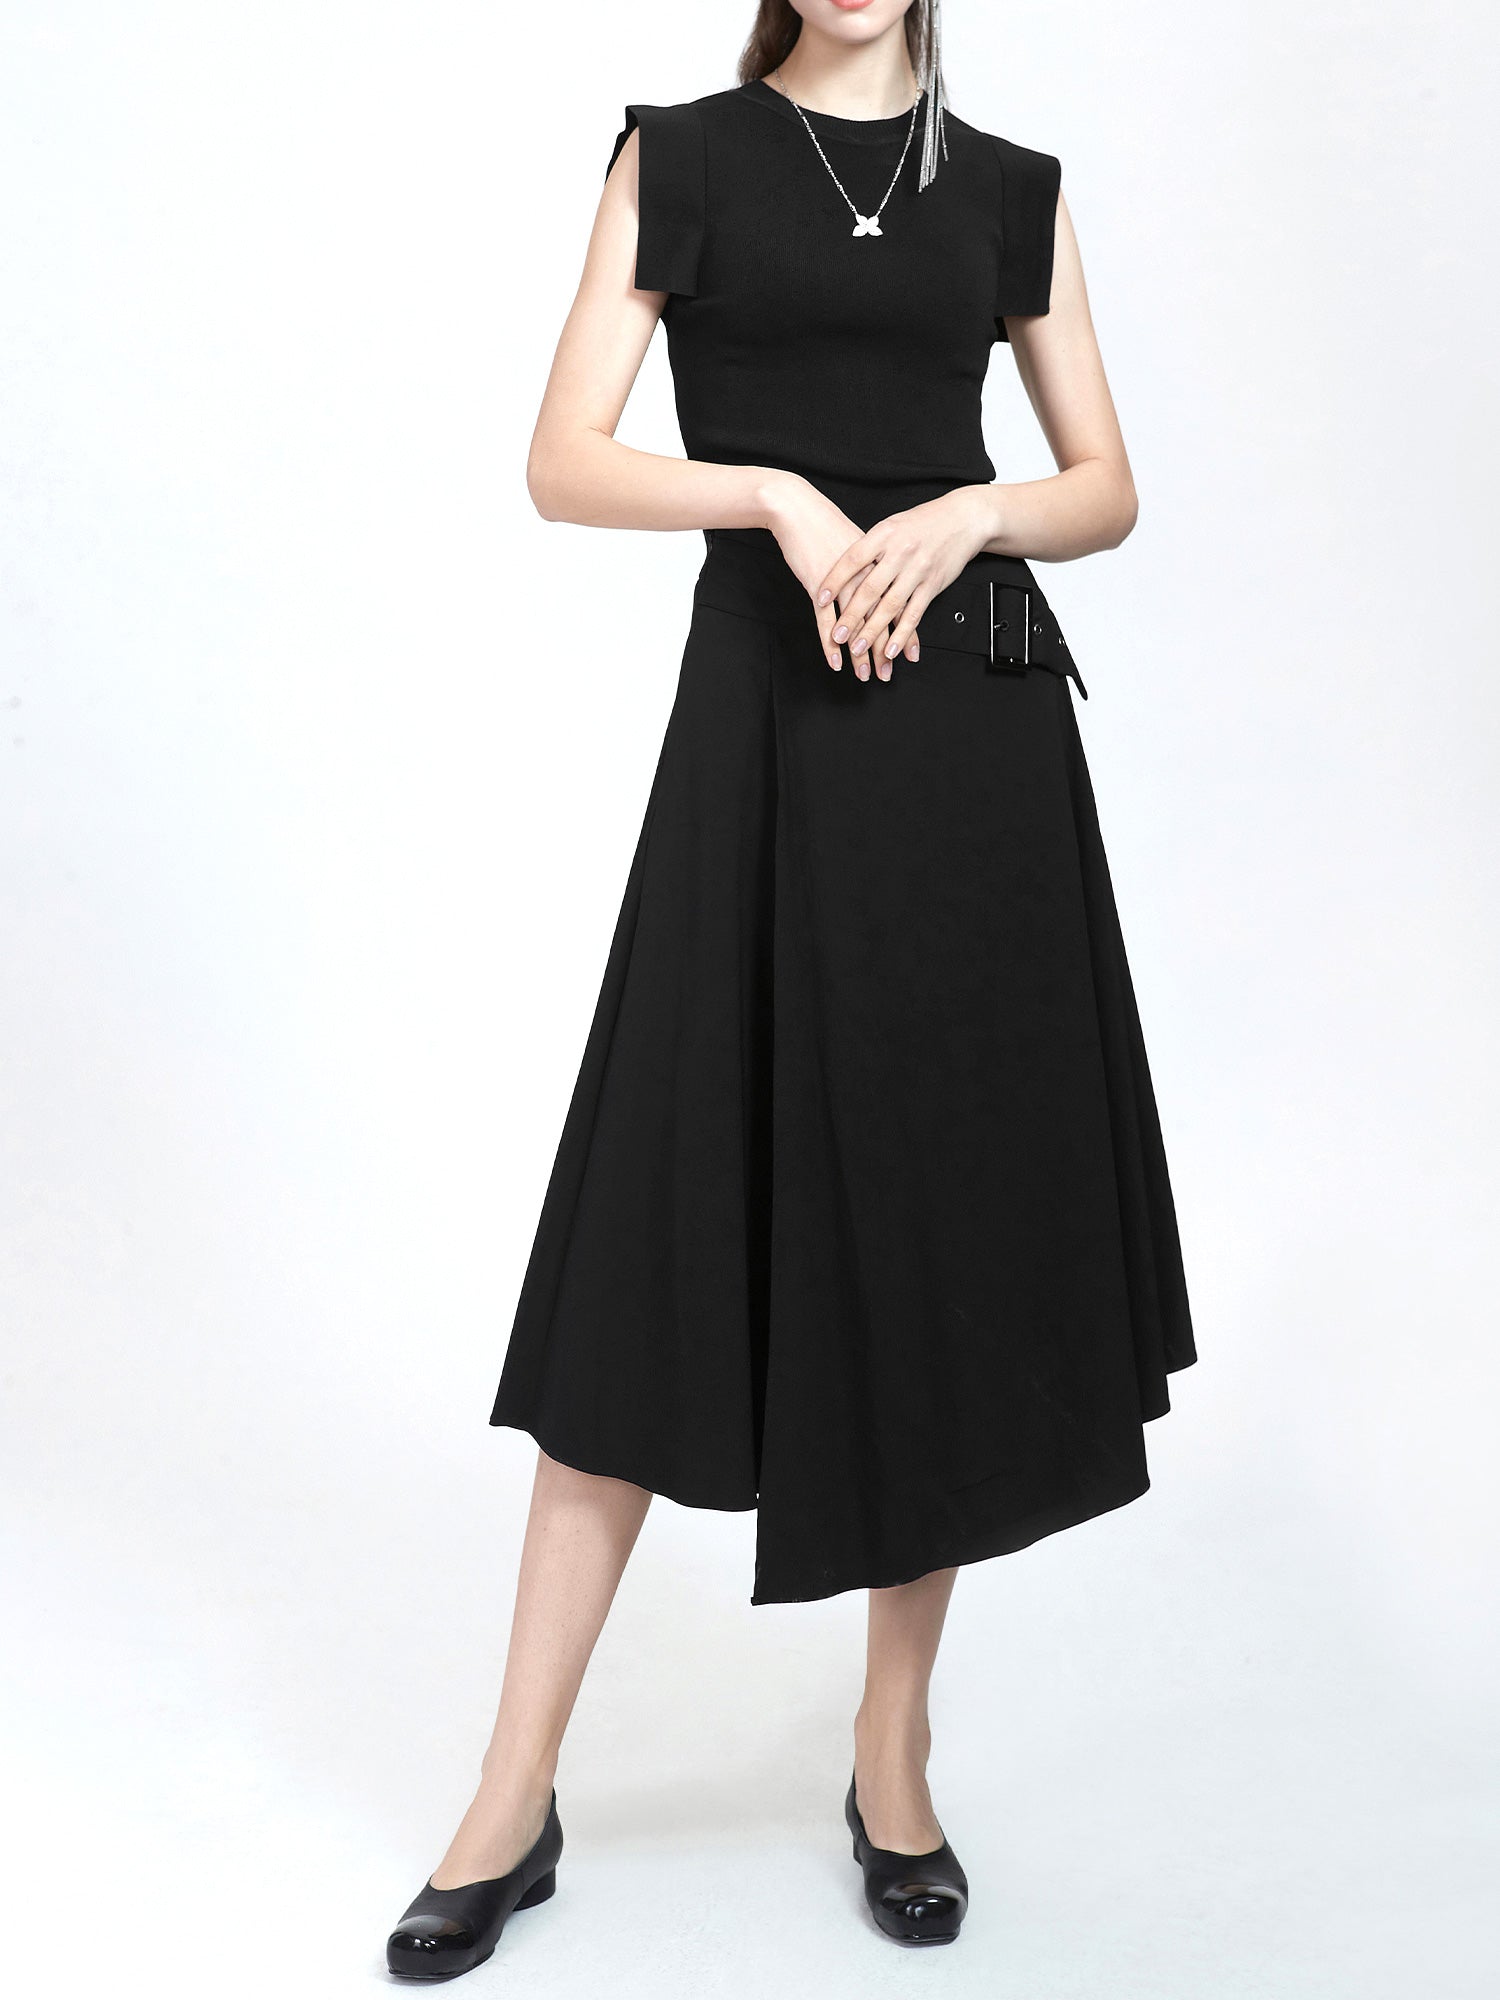 Trends in irregular hem skirts in fashionable women&#39;s wear